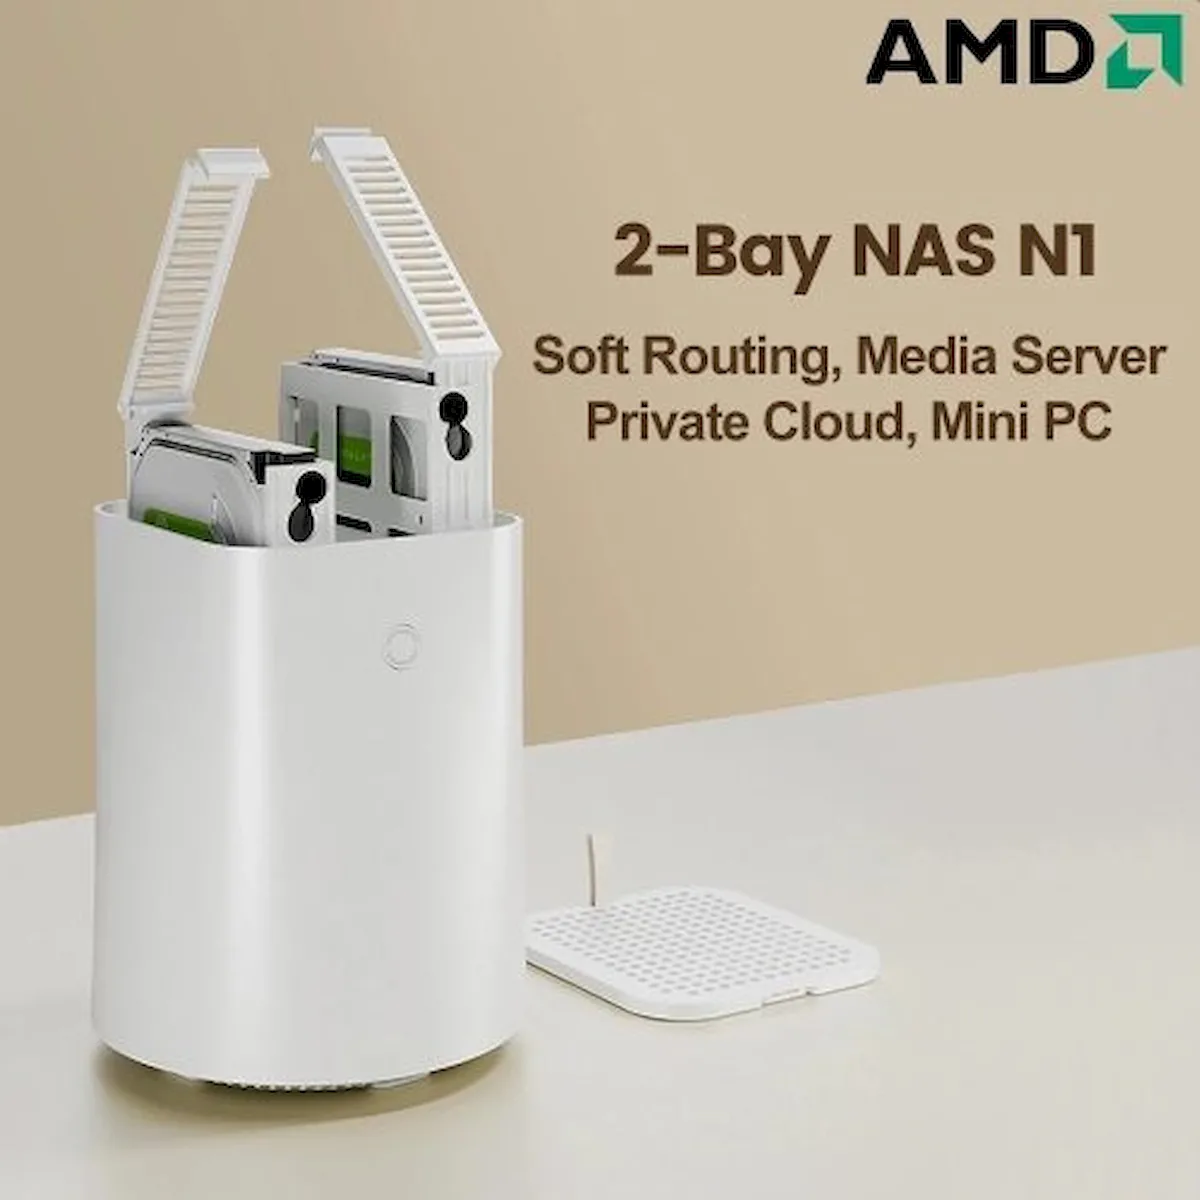 Topton NAS N1, um servidor de armazenamento doméstico dual-bay com AMD Athlon 3050e